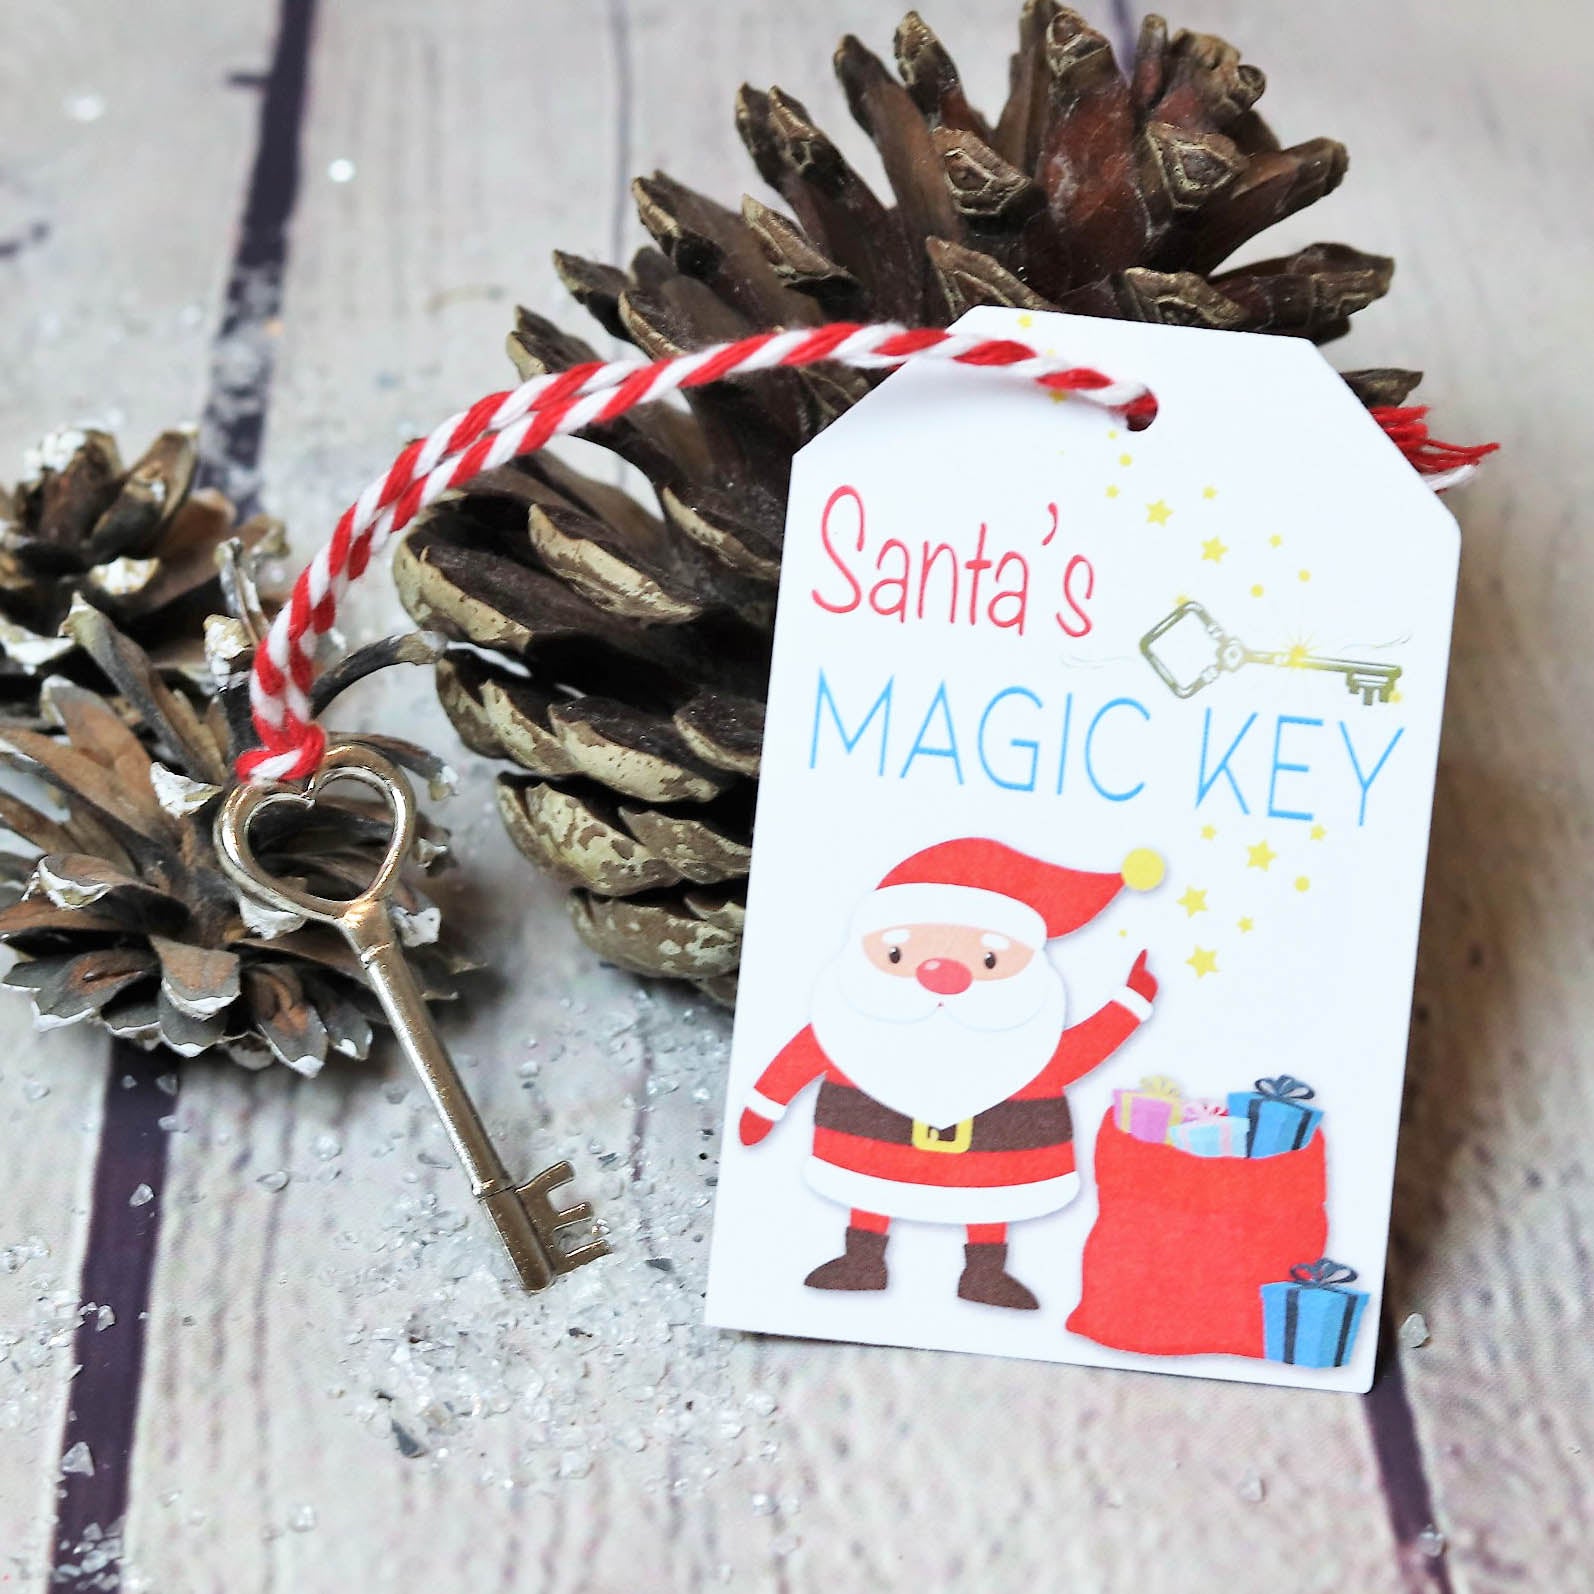 Santa's Lost Button and Magic Key